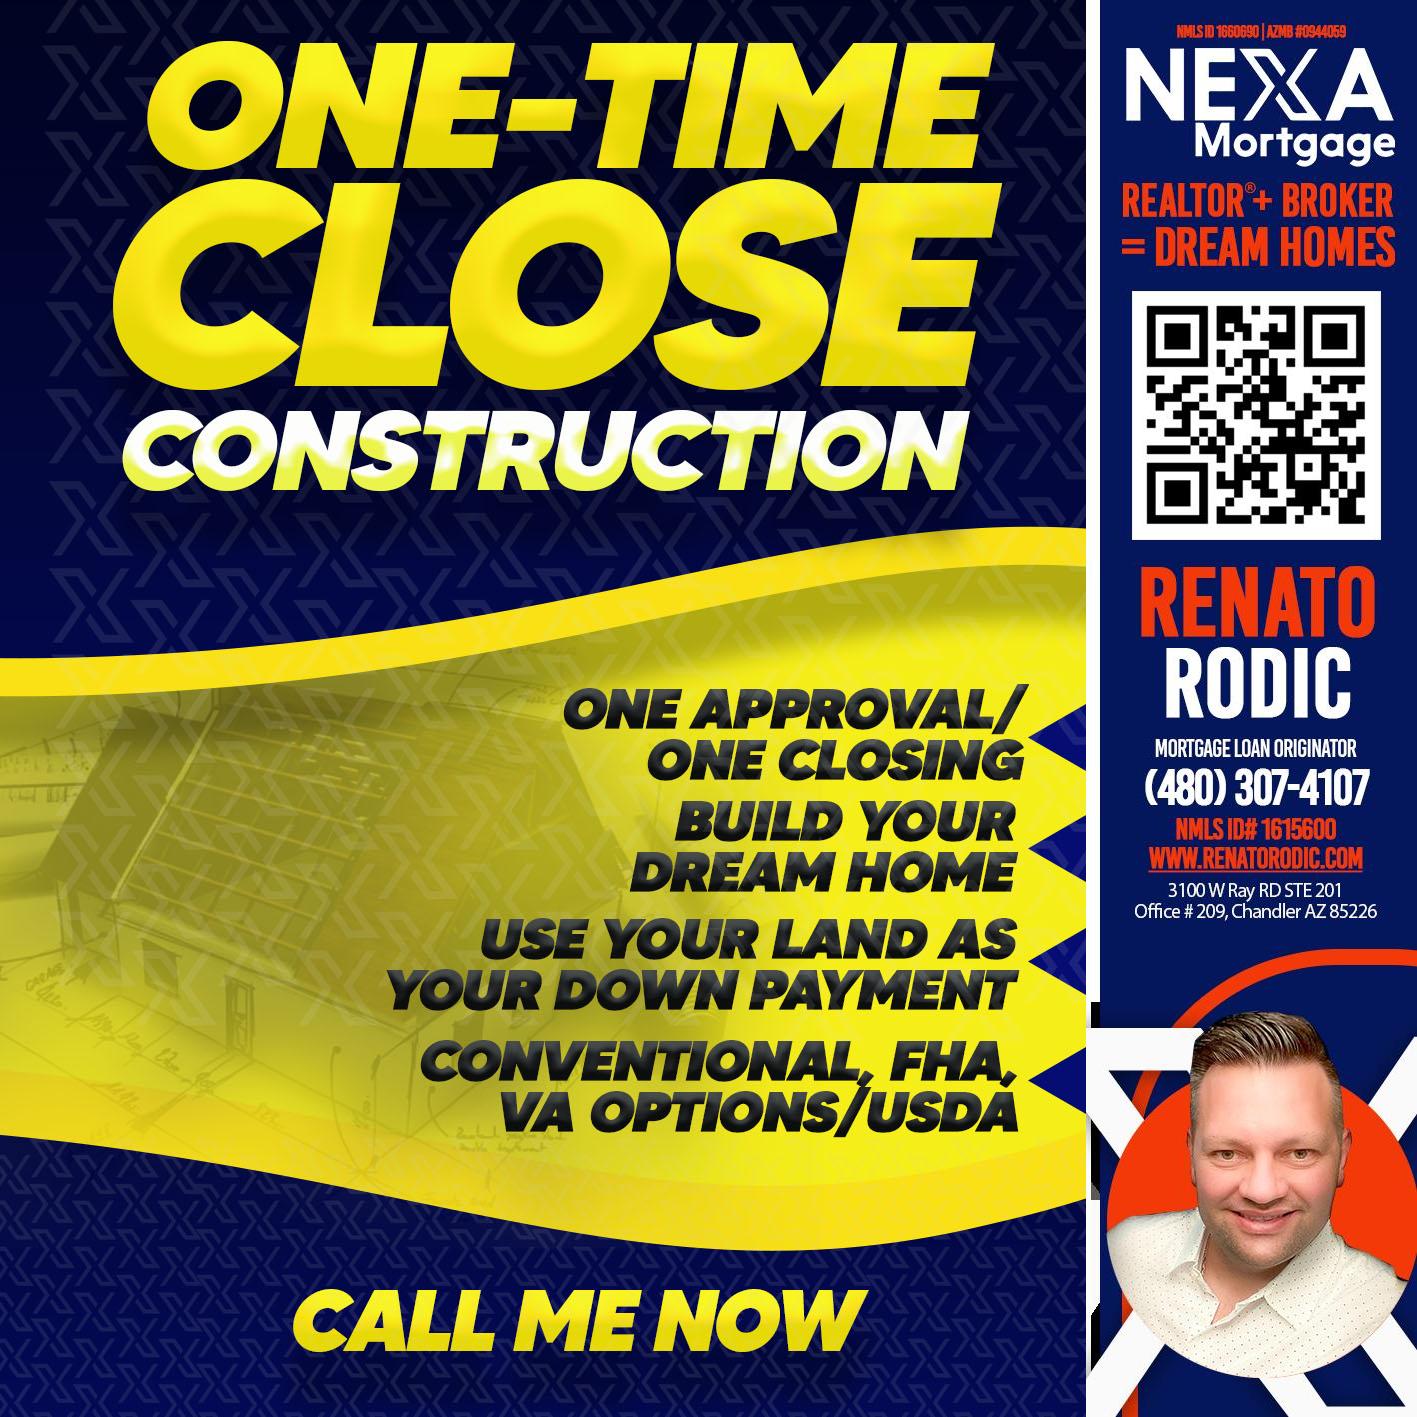 CLOSING FIX - Renato Rodic -Mortgage Loan Originator